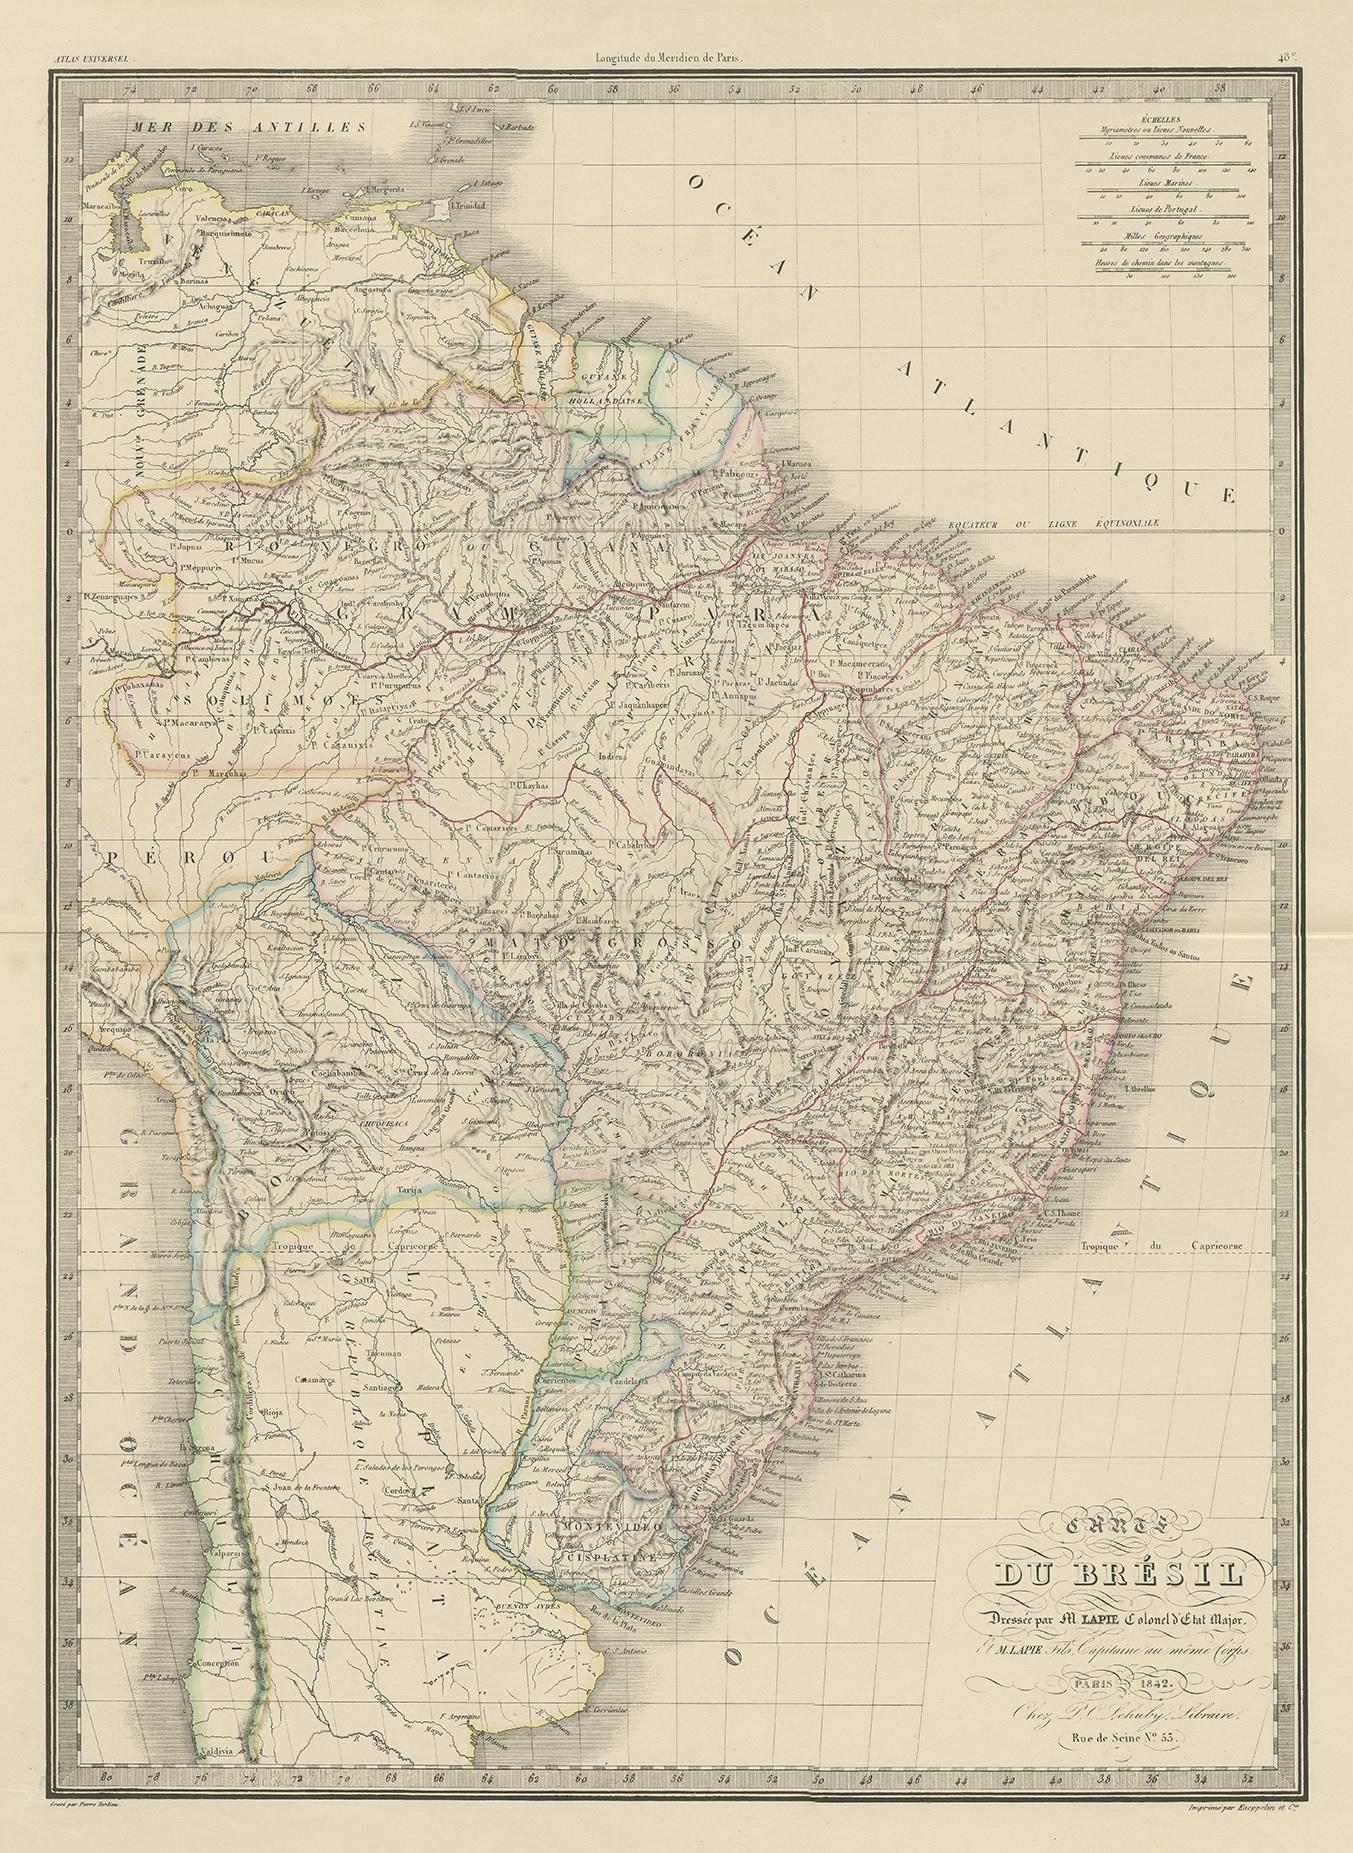 Antique map titled 'Carte du Brésil'. Map of Brazil, South America. This map originates from 'Atlas universel de géographie ancienne et moderne (..)' by Pierre M. Lapie and Alexandre E. Lapie. Pierre M. Lapie was a French cartographer and engraver.